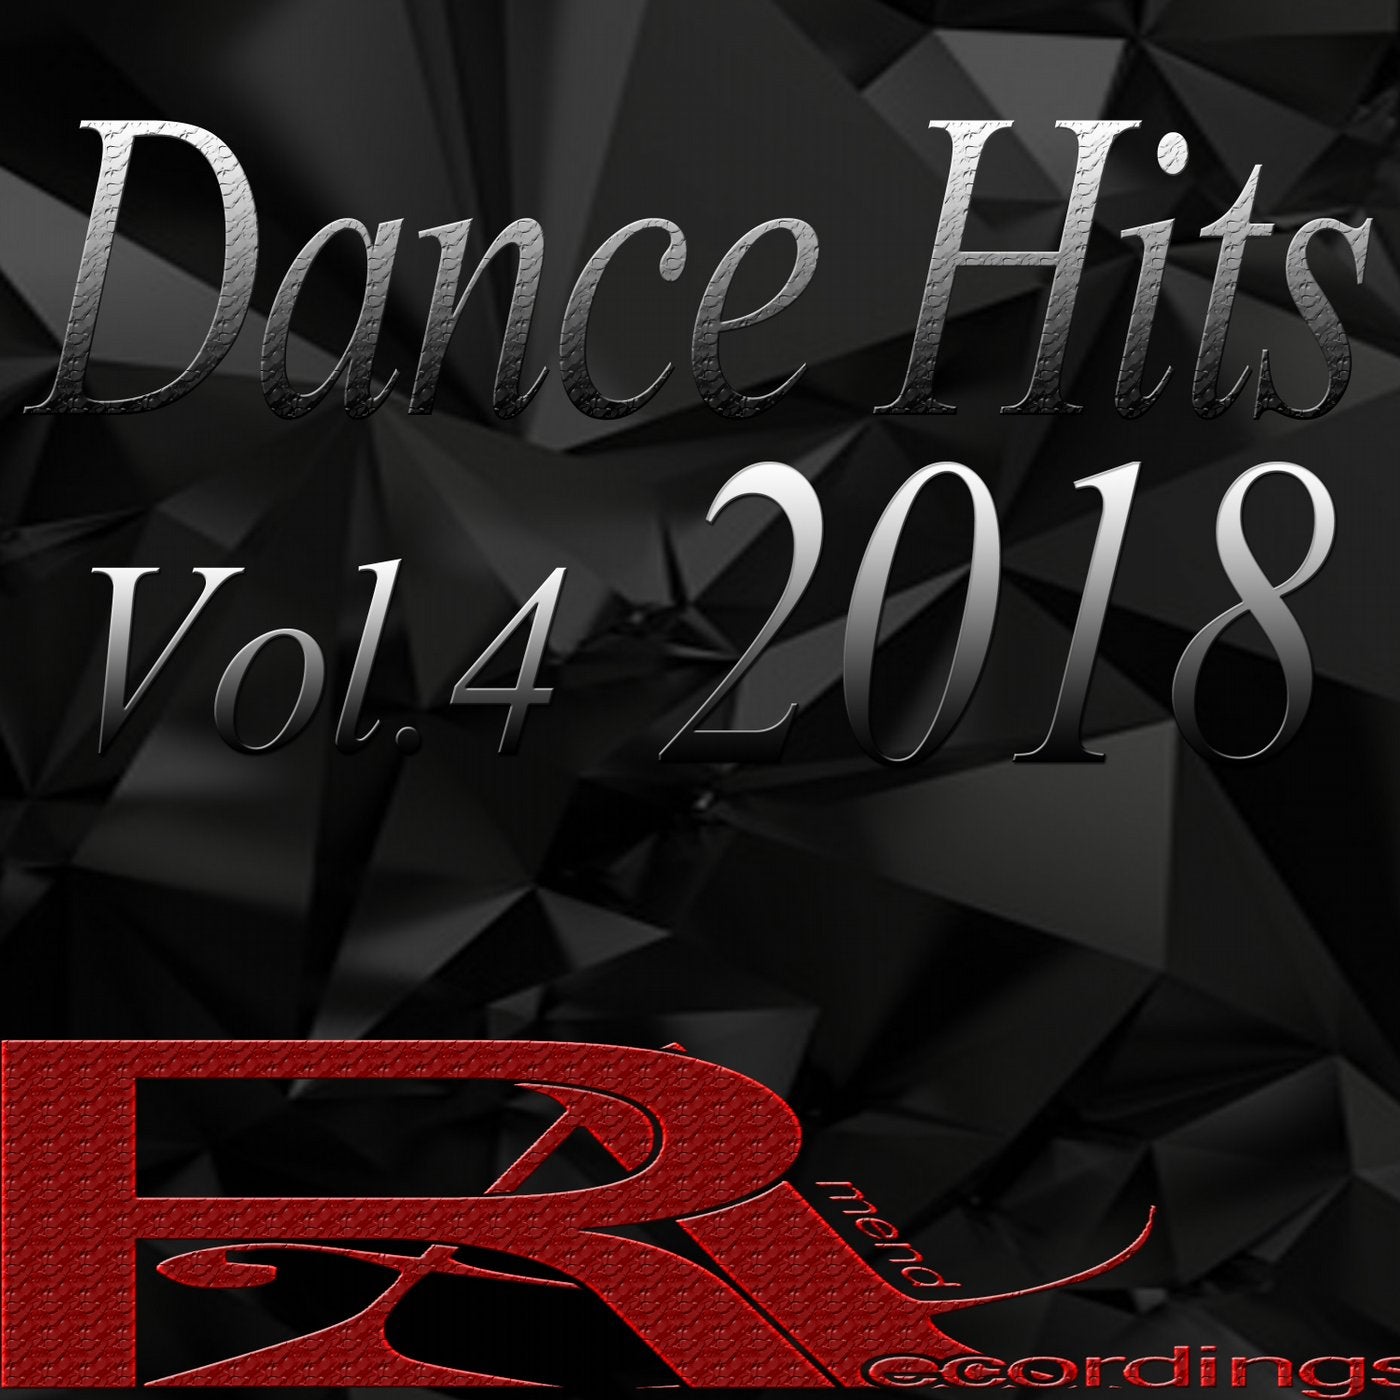 Dance Hits 2018, Vol. 4